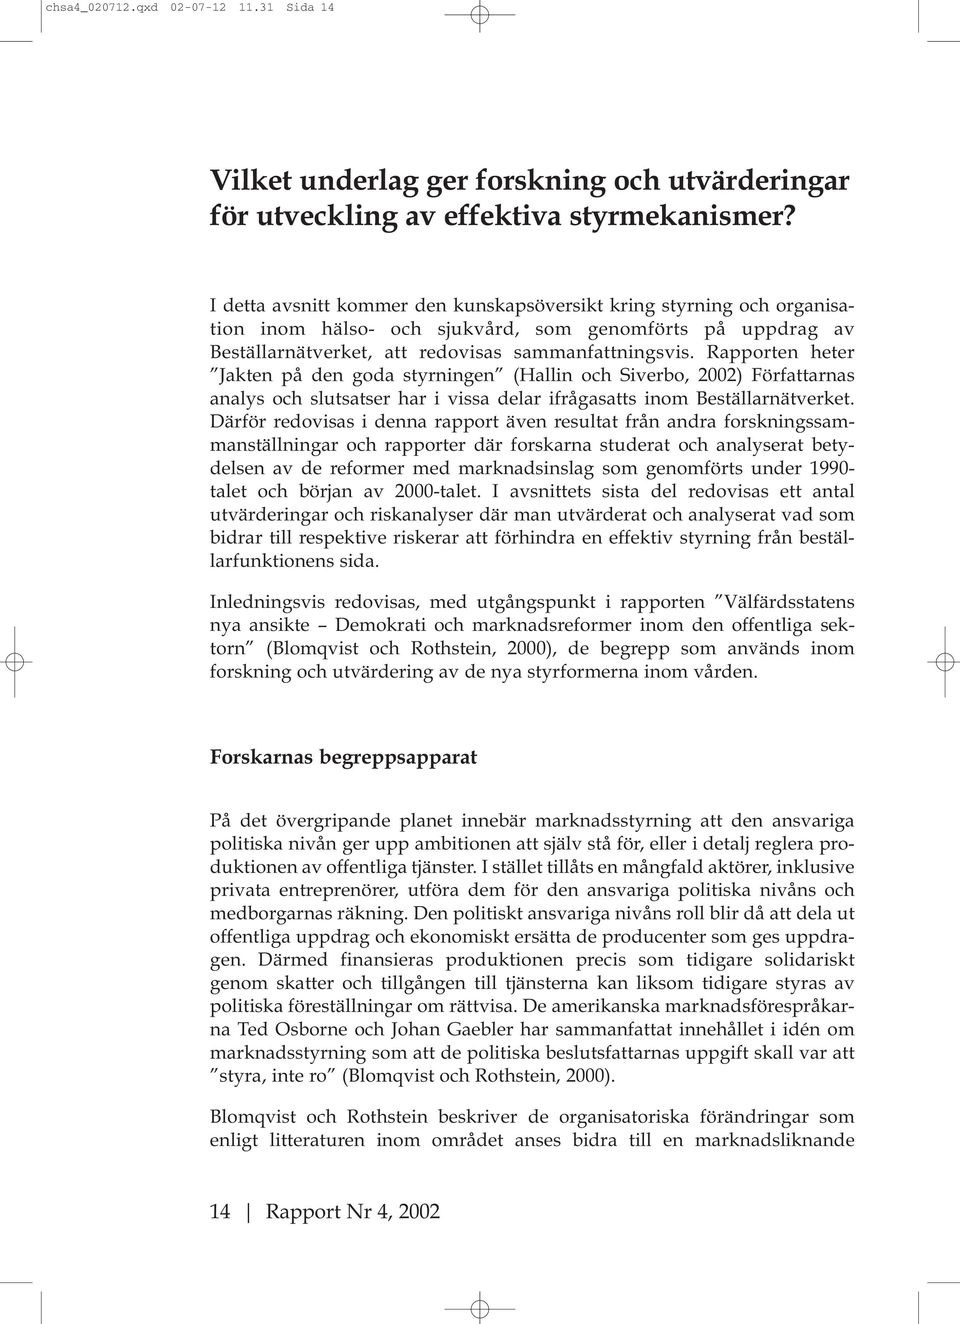 Rapporten heter Jakten på den goda styrningen (Hallin och Siverbo, 2002) Författarnas analys och slutsatser har i vissa delar ifrågasatts inom Beställarnätverket.